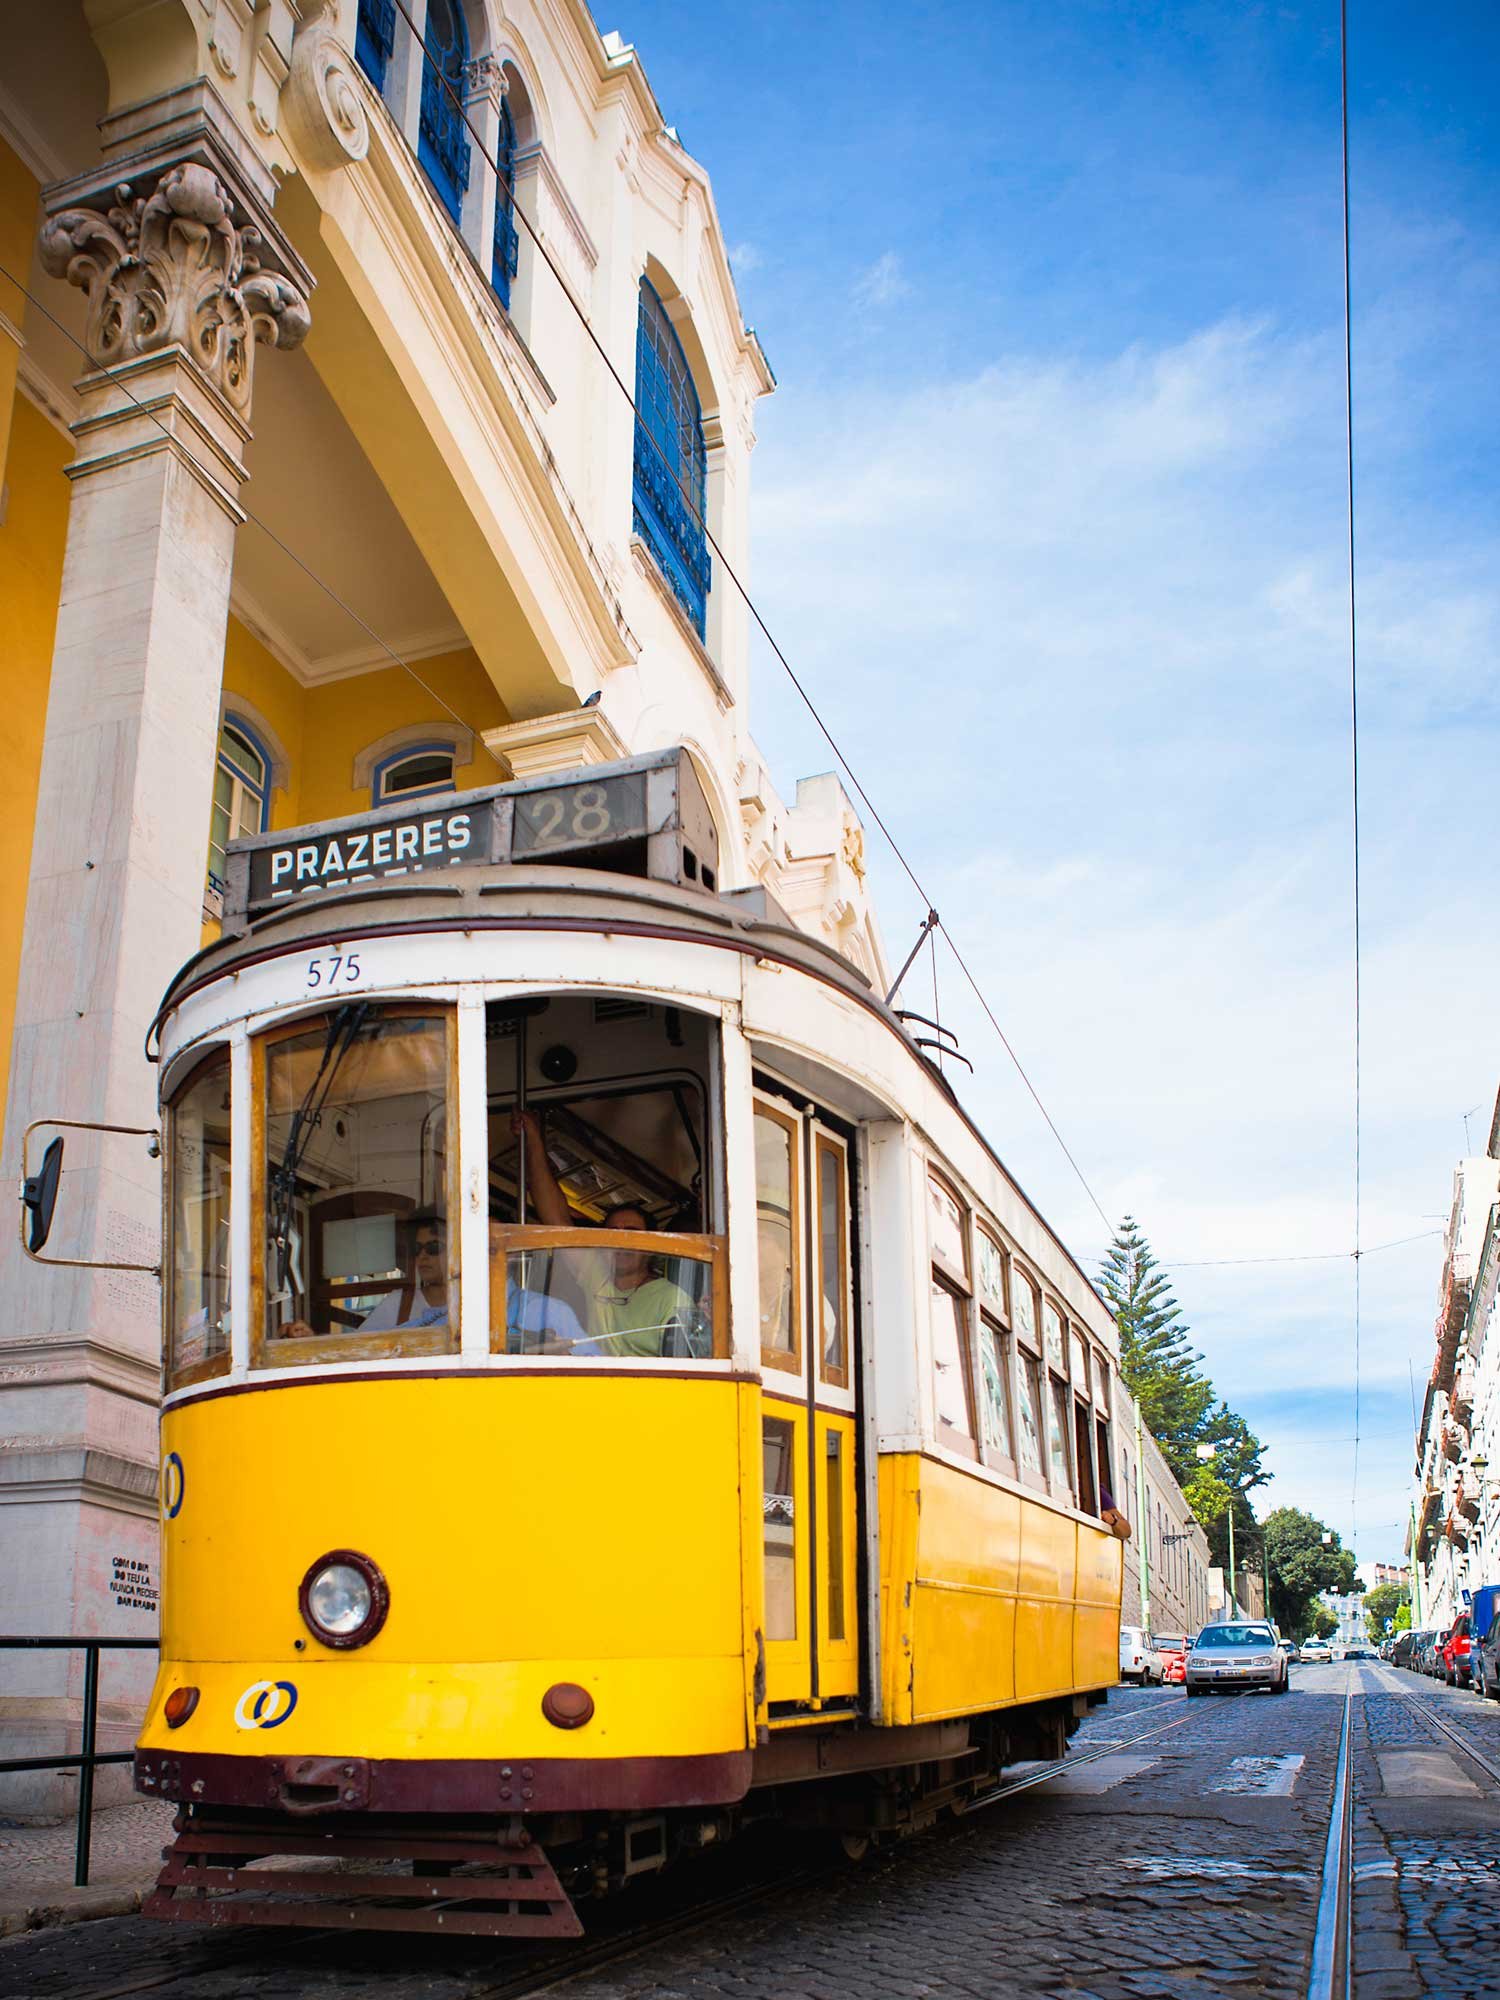 Die gelb-weißen Straßenbahnen sind ein Muss, wenn man in Lissabon ist.